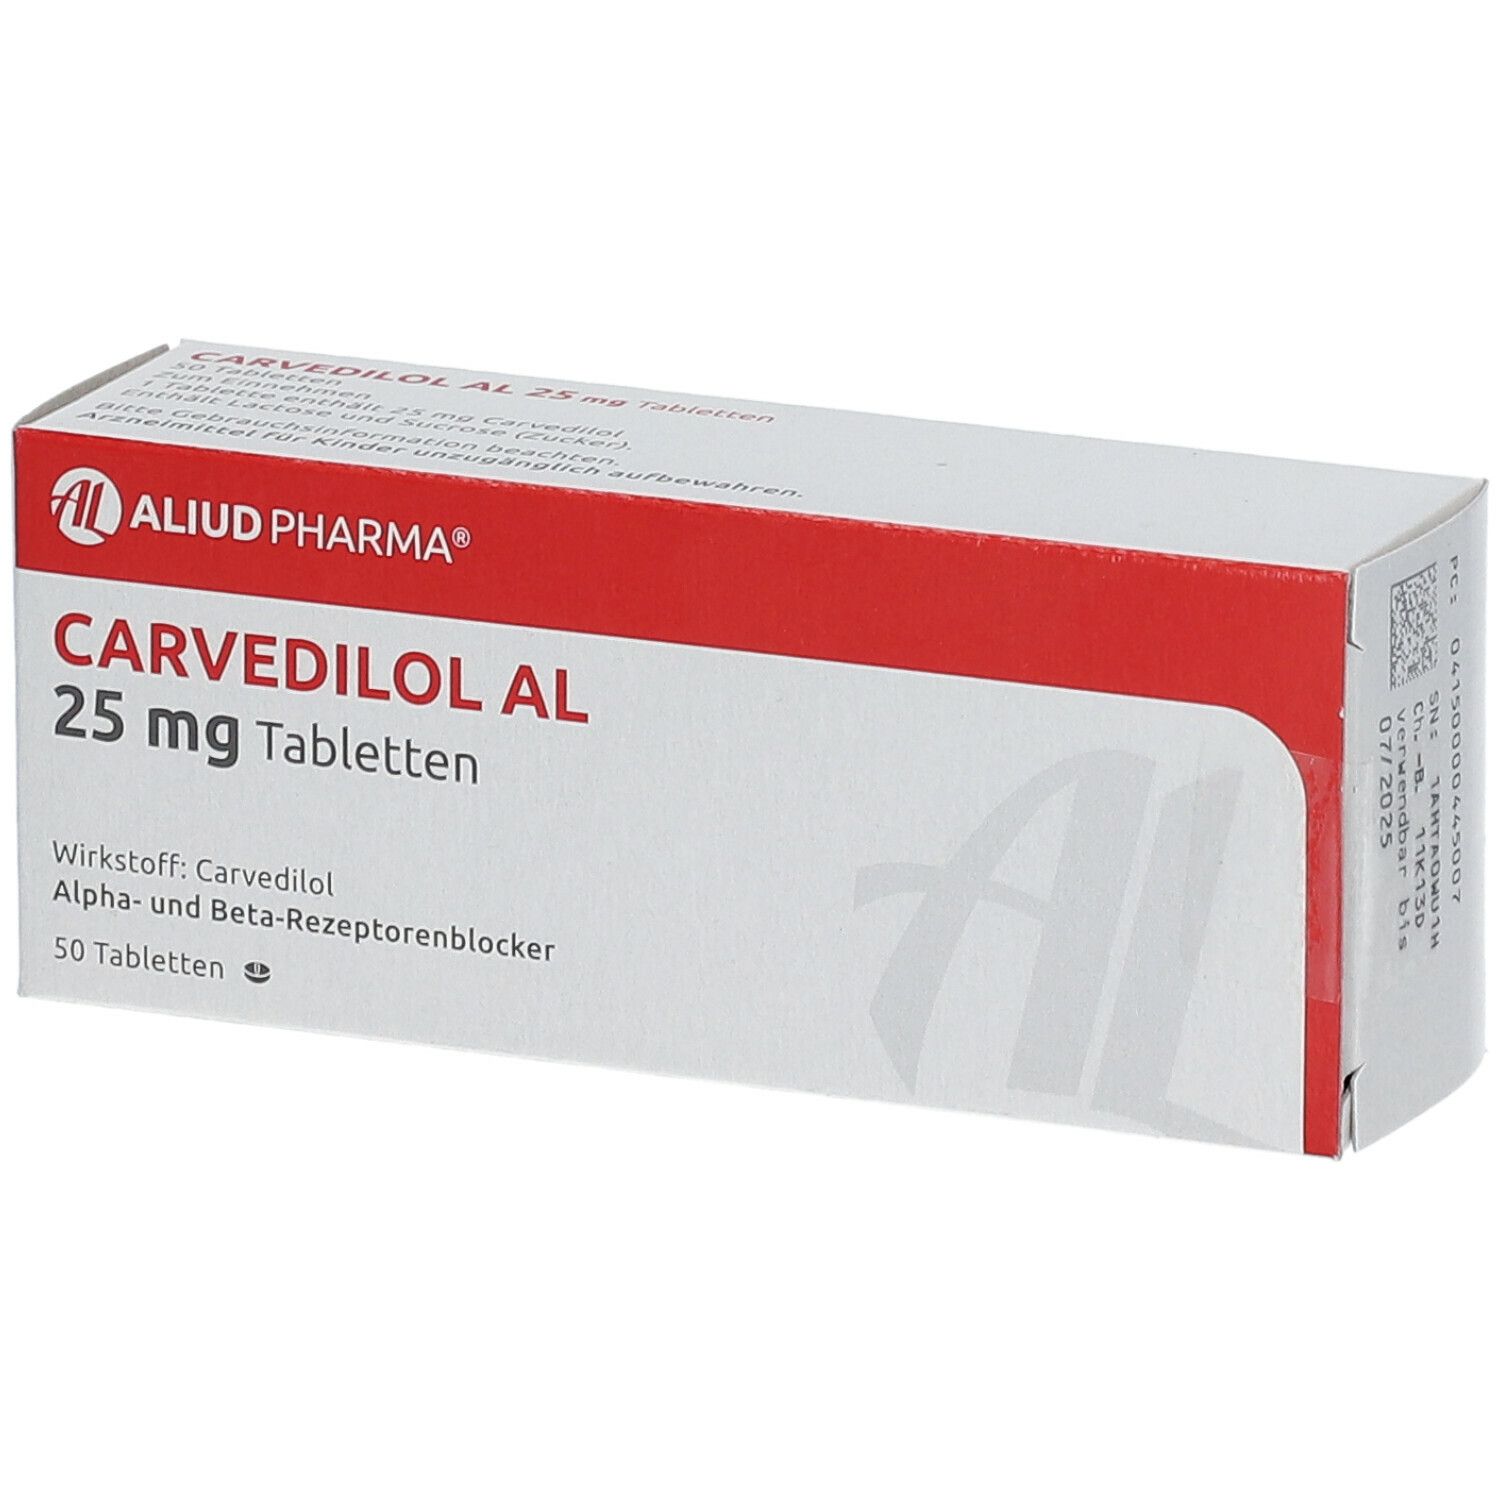 Carvedilol AL 25 mg